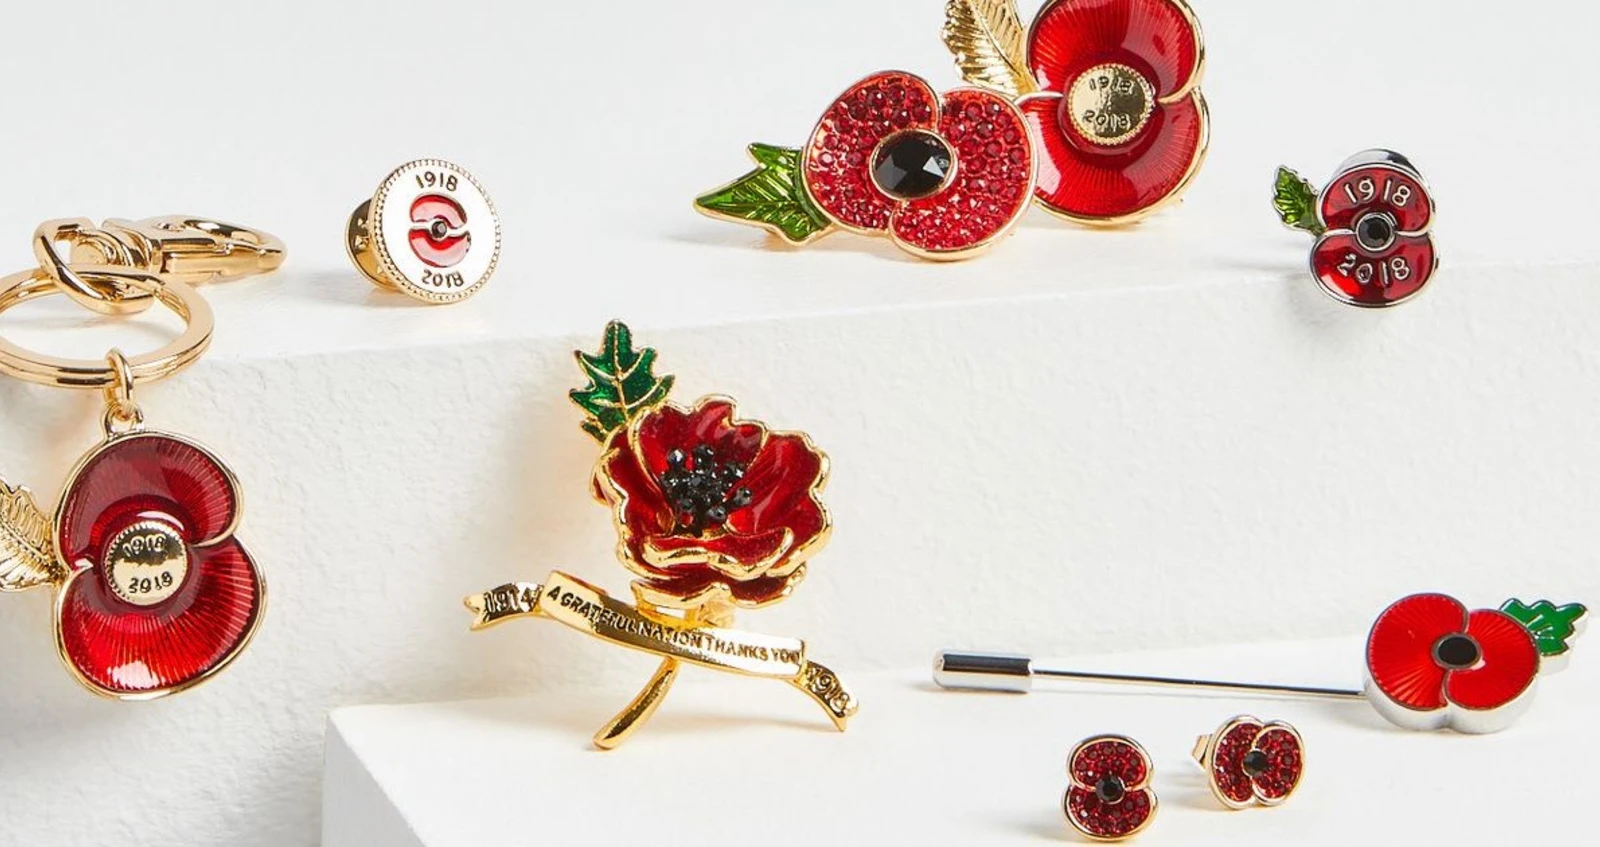 M&S poppy merchandise (keychain, lapel pin, broach, earrings)